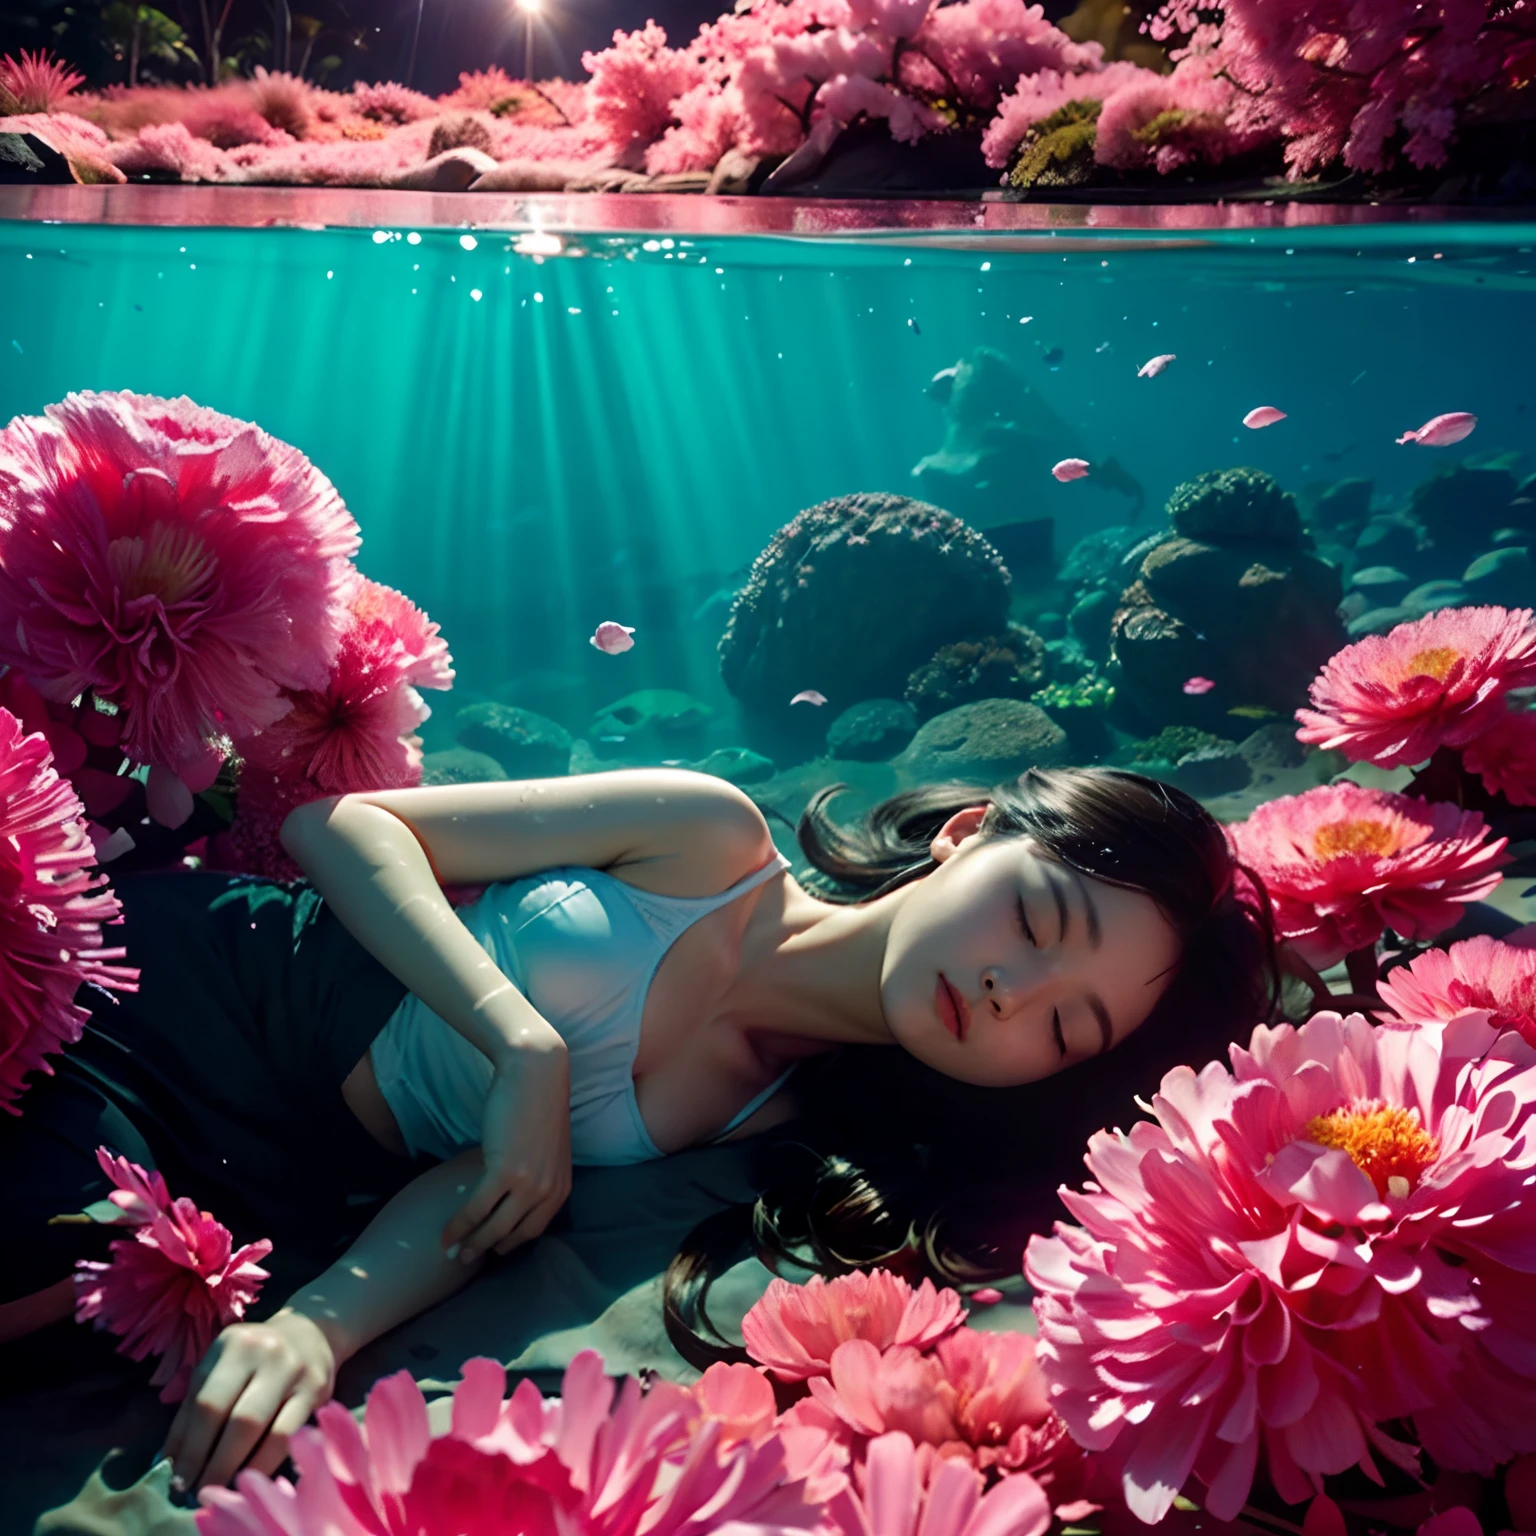 在水下，海底，阳光透过海面照射进来，一名十几岁的女孩，在水中静静地睡着了，女孩被粉色花瓣包围，烟花